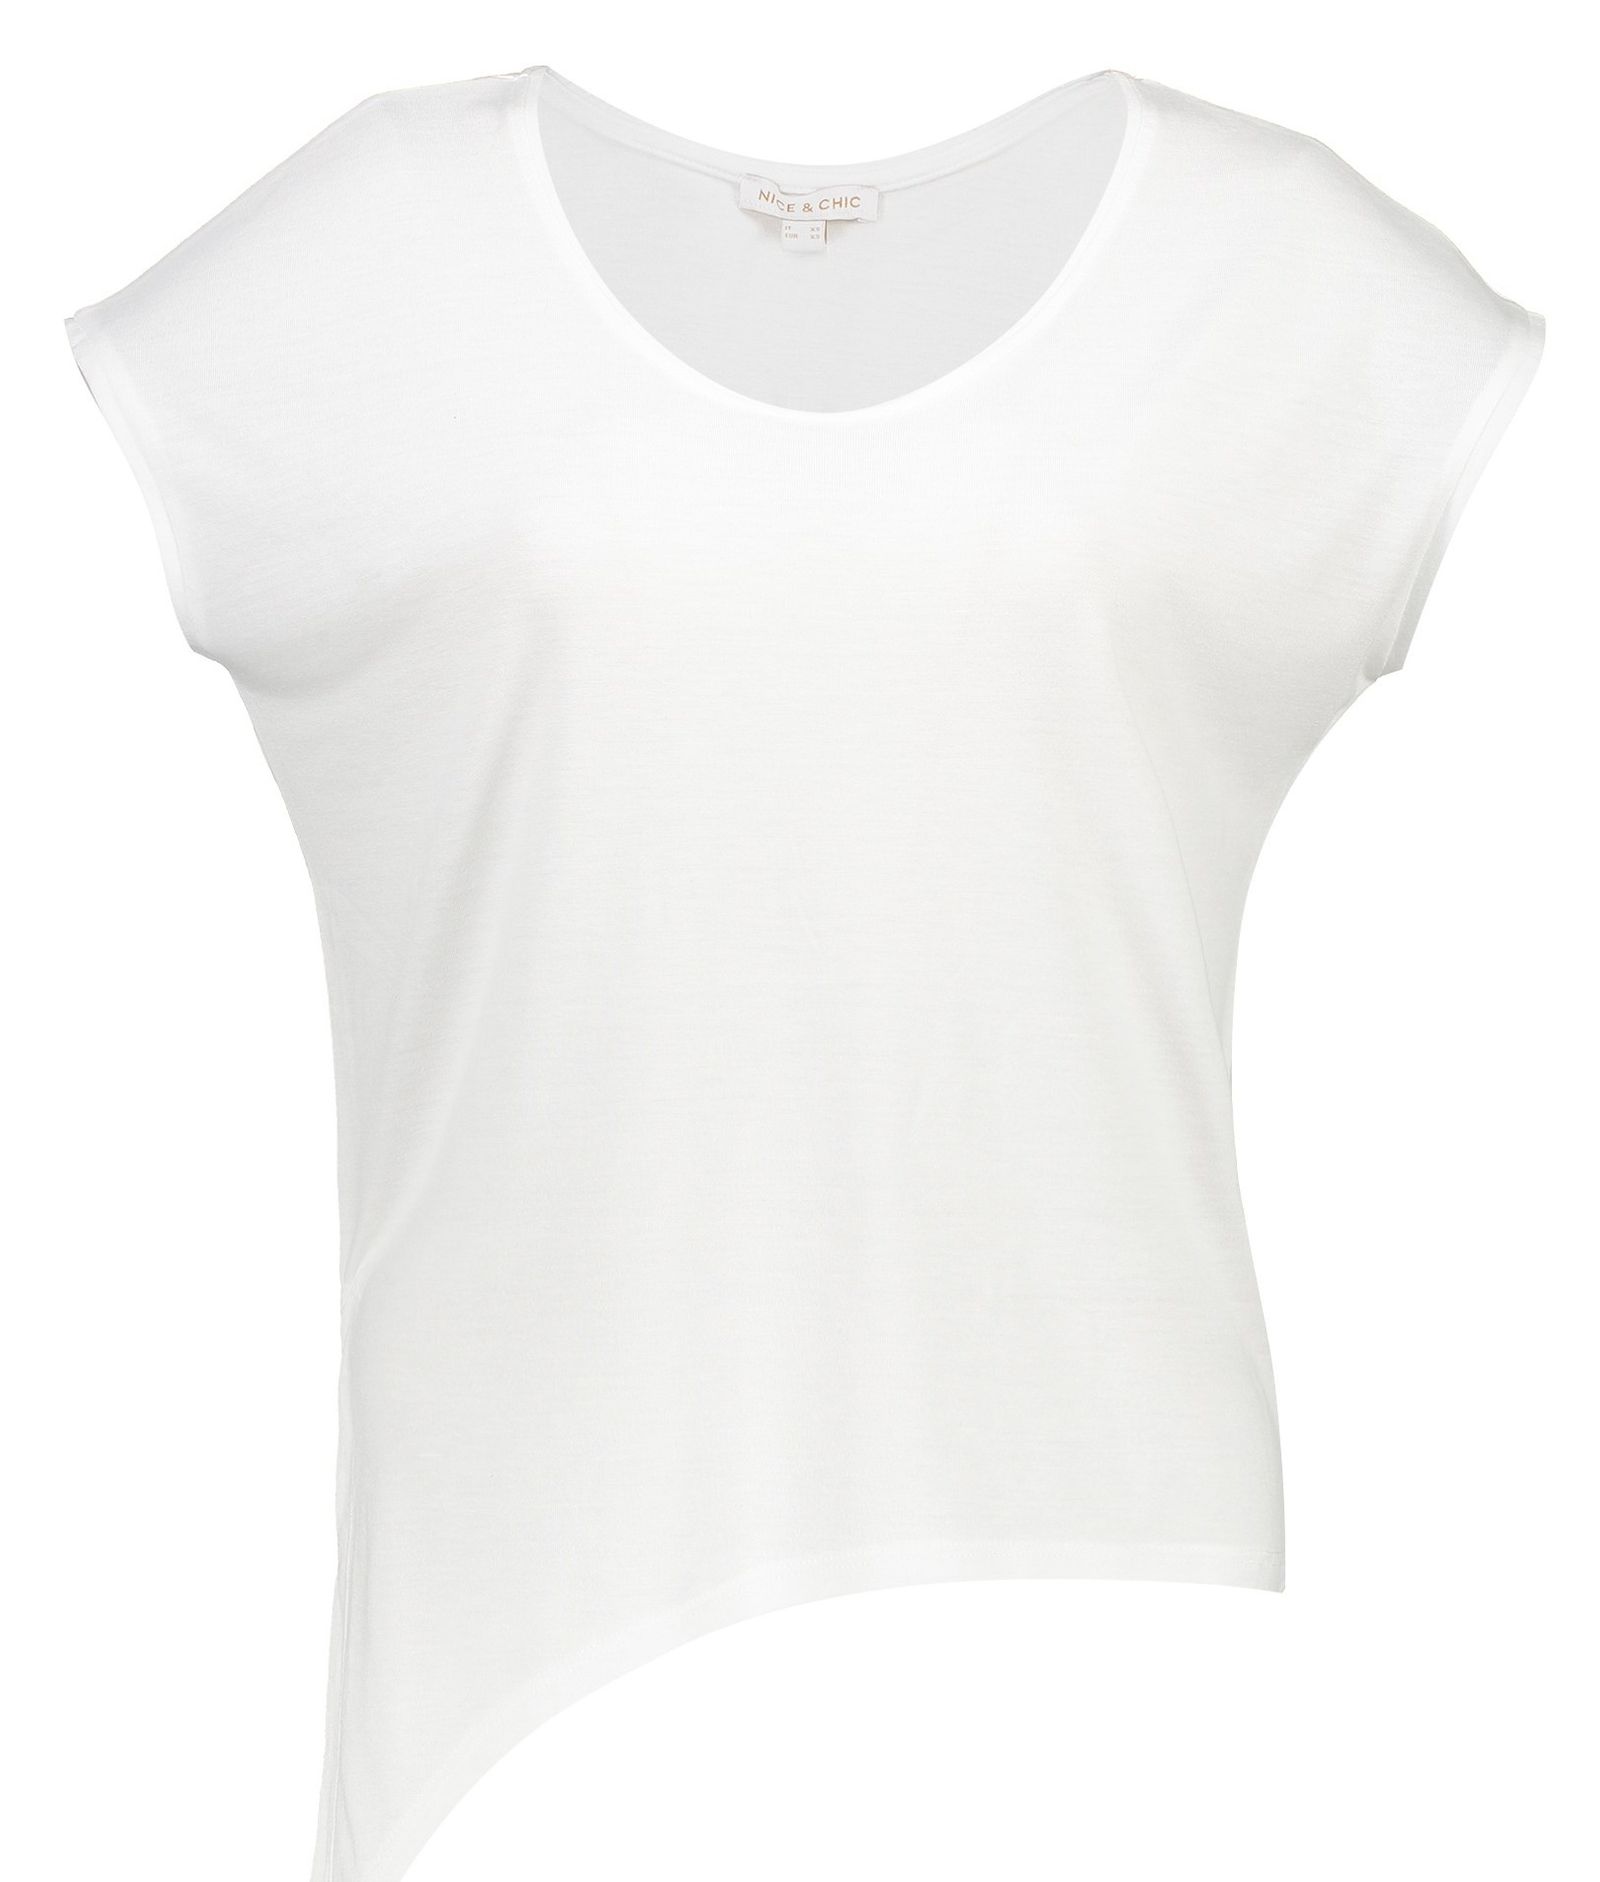 تی شرت یقه گرد زنانه - یوپیم - سفيد - 1